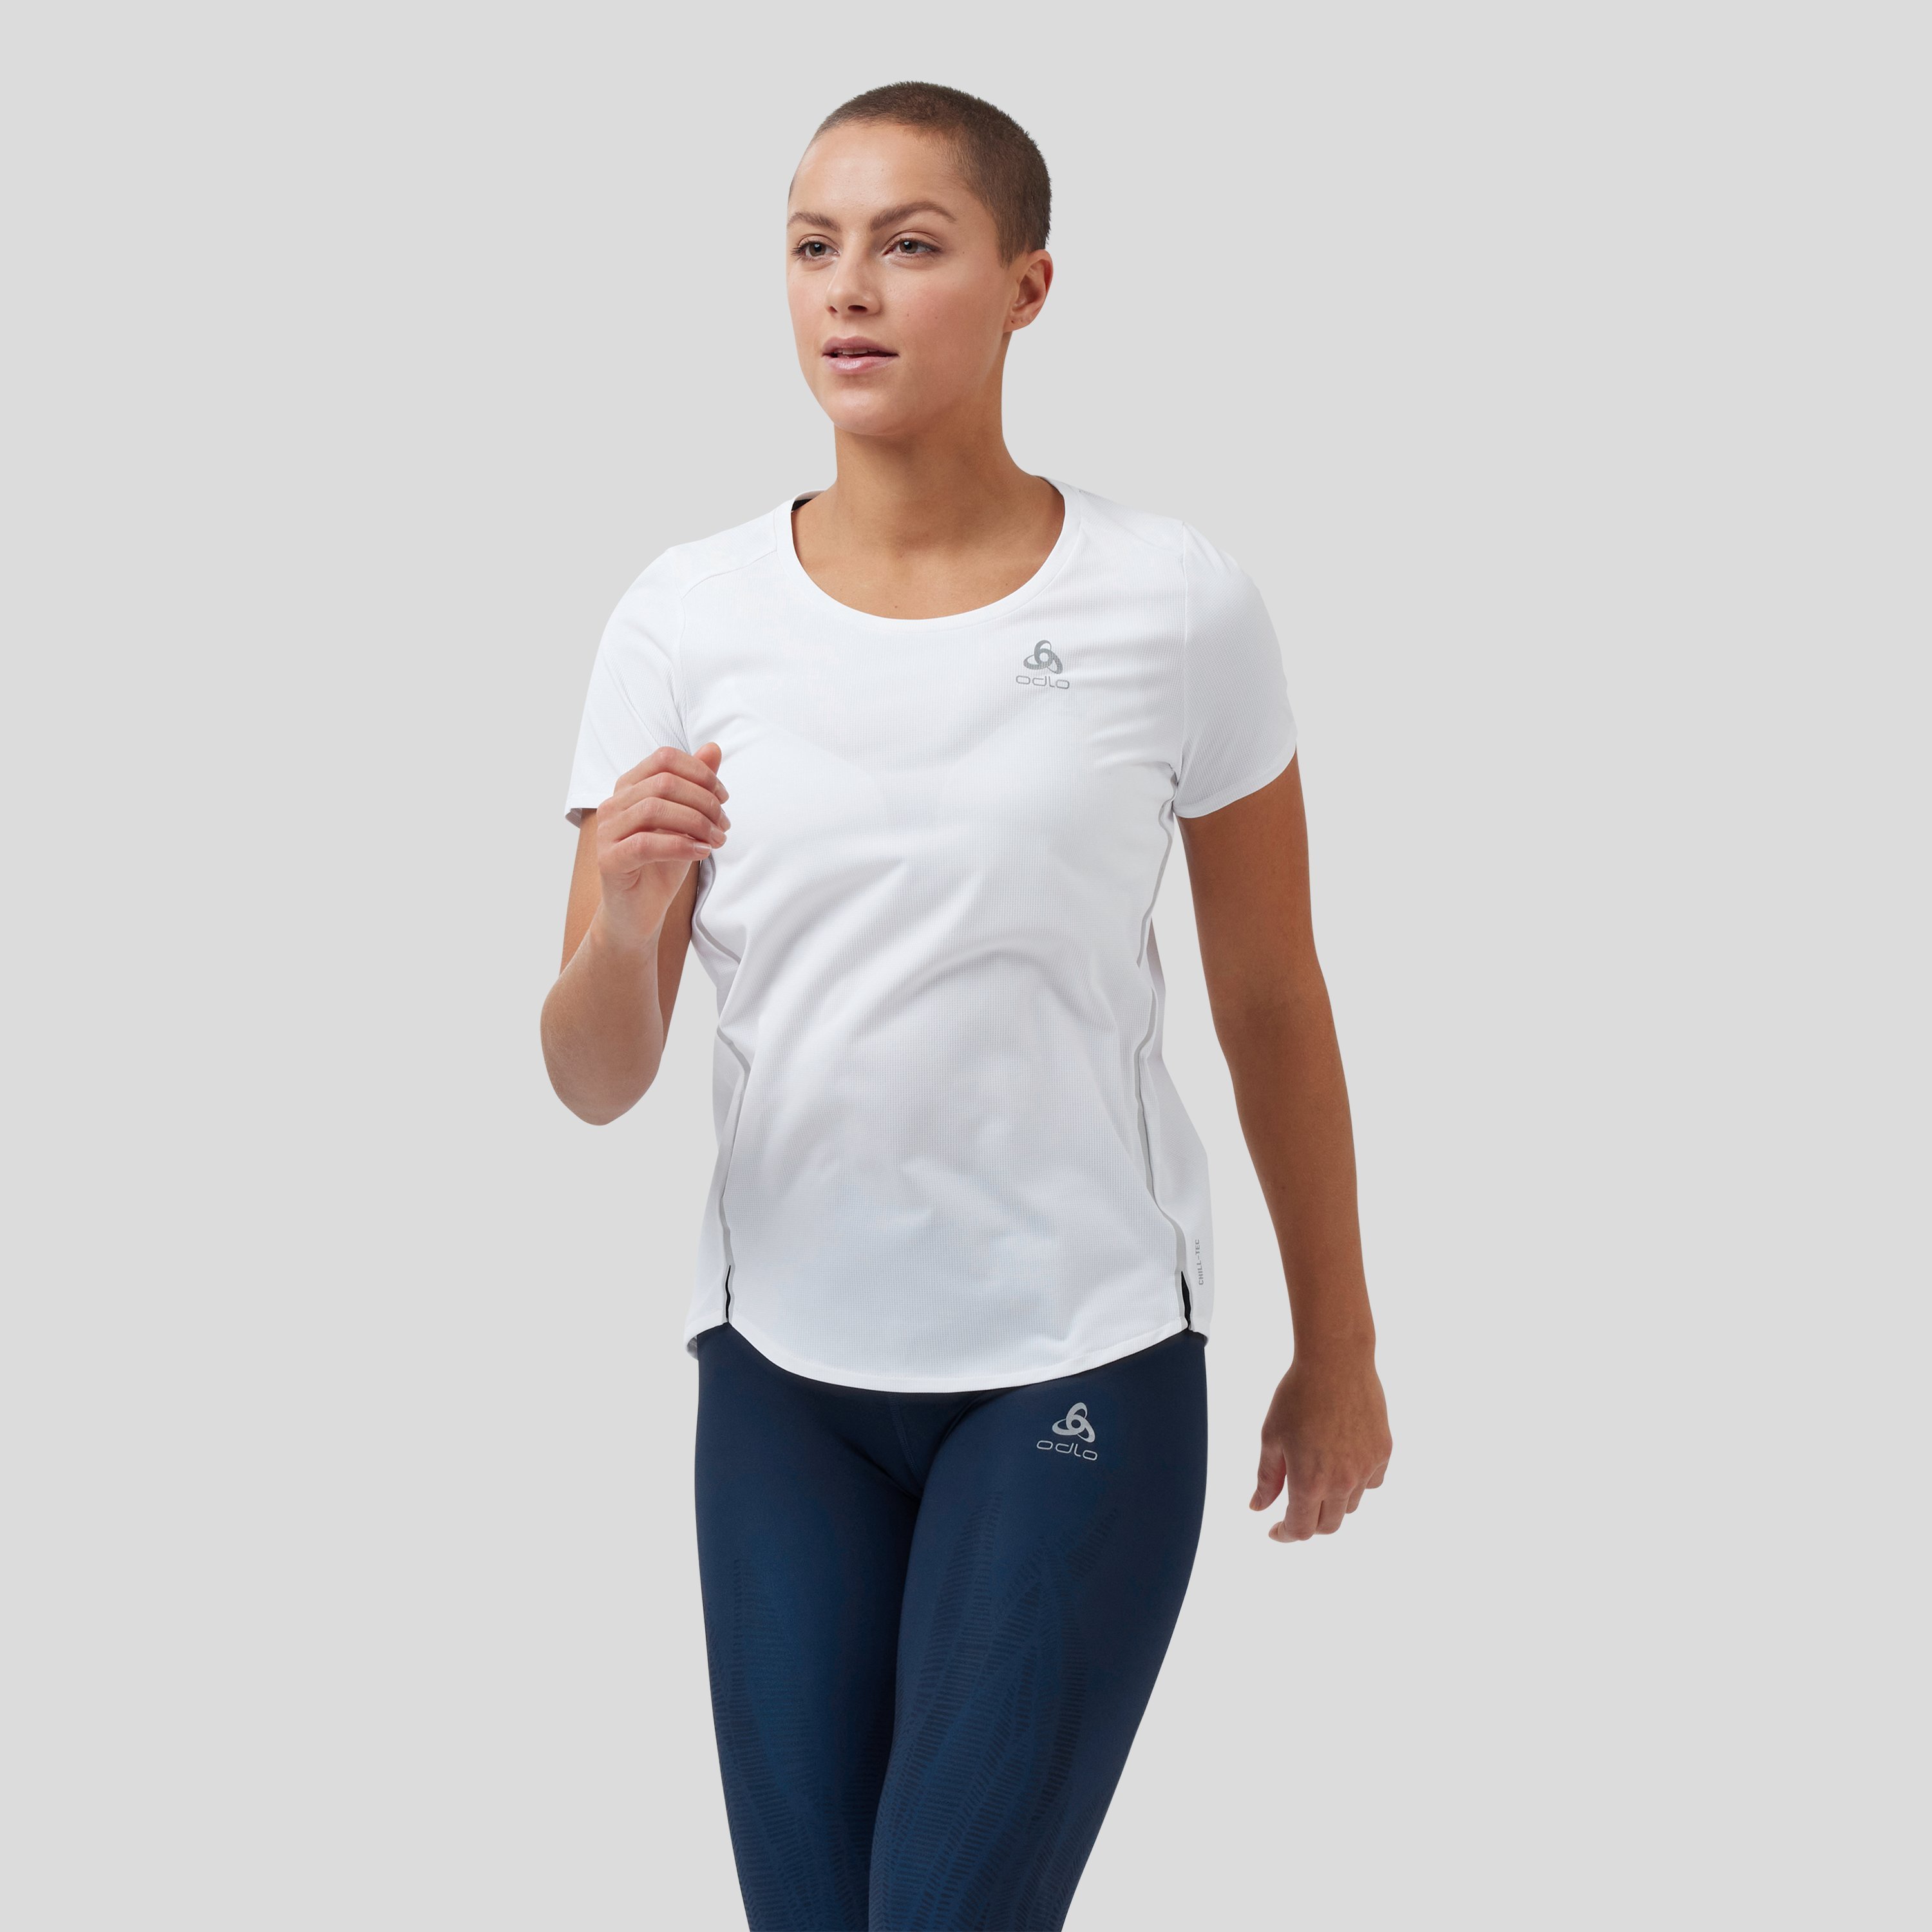 ODLO Zeroweight Chill-Tec T-Shirt für Damen, XS, weiss